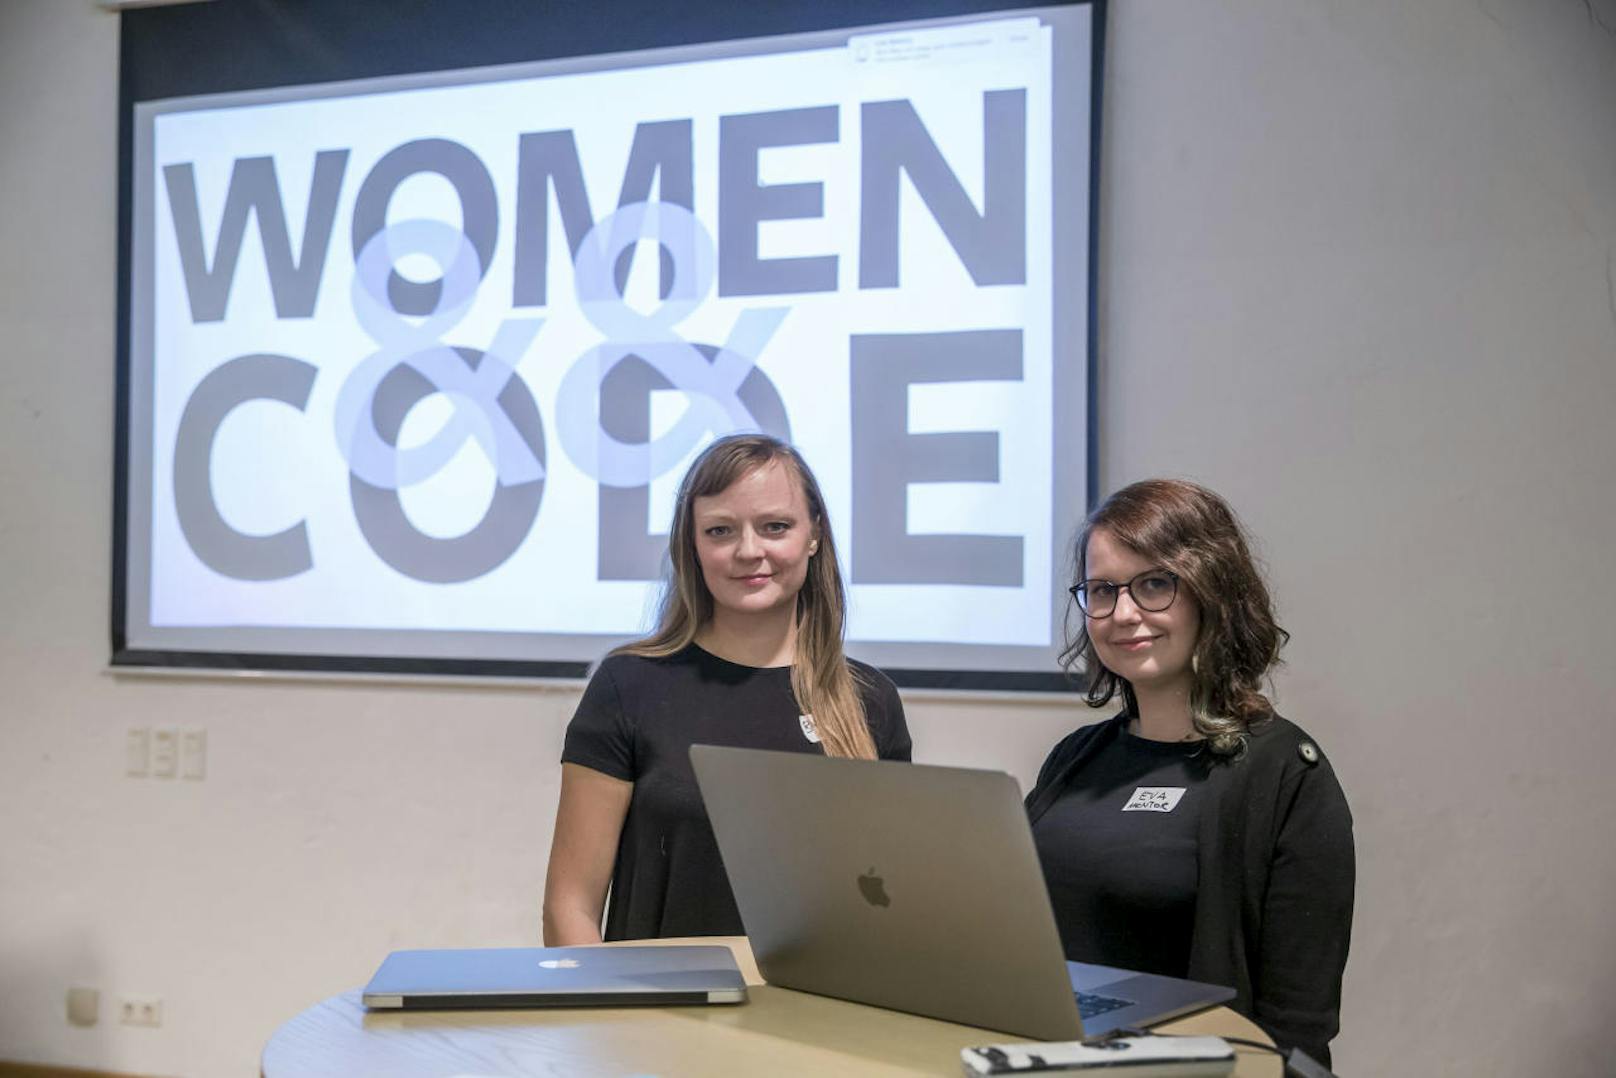 Software-Entwicklerin Barbara Ondrisek (39) und die Front-end-Developerin Eva Lettner (33) starteten mit ihrer Initiative "Women&&Code" vor einem halben Jahr mit kostenlosen Kursen für Frauen.